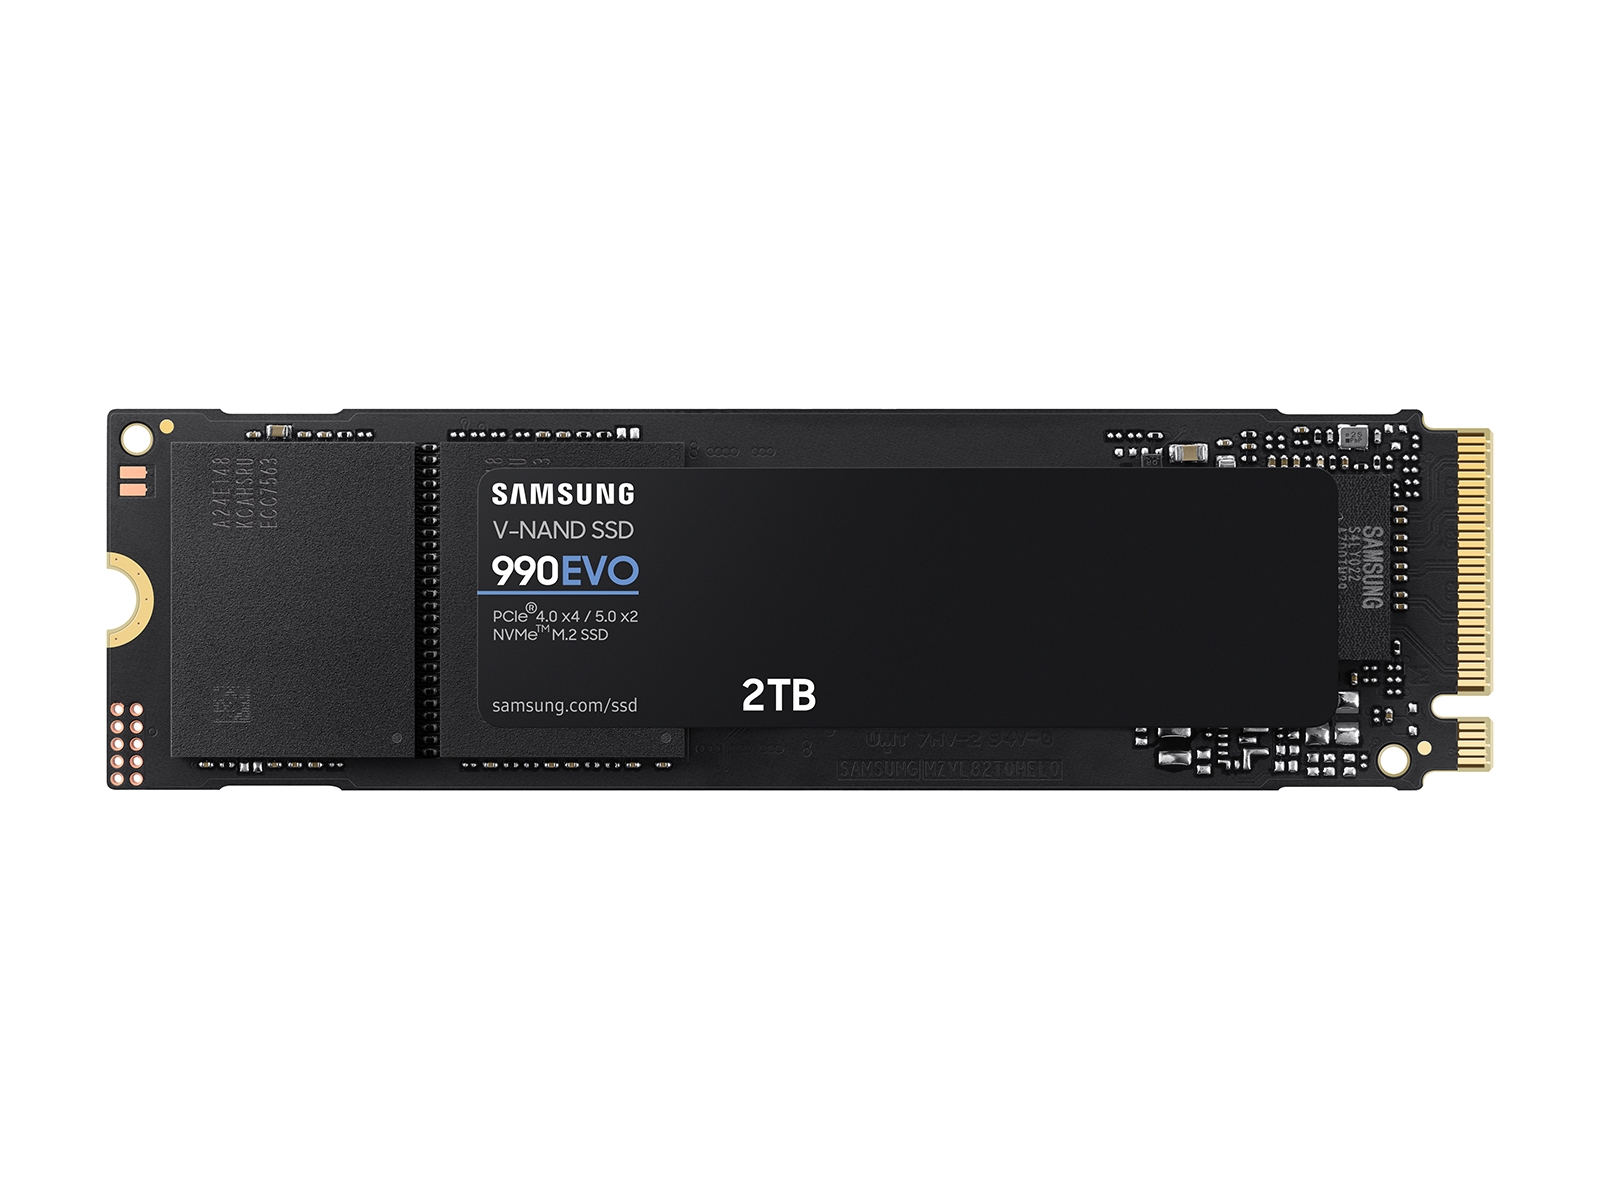 SAMSUNG SSD 970 EVO Plus Series - 250GB PCIe NVMe - M.2 Internal SSD -  MZ-V7S250B/AM 